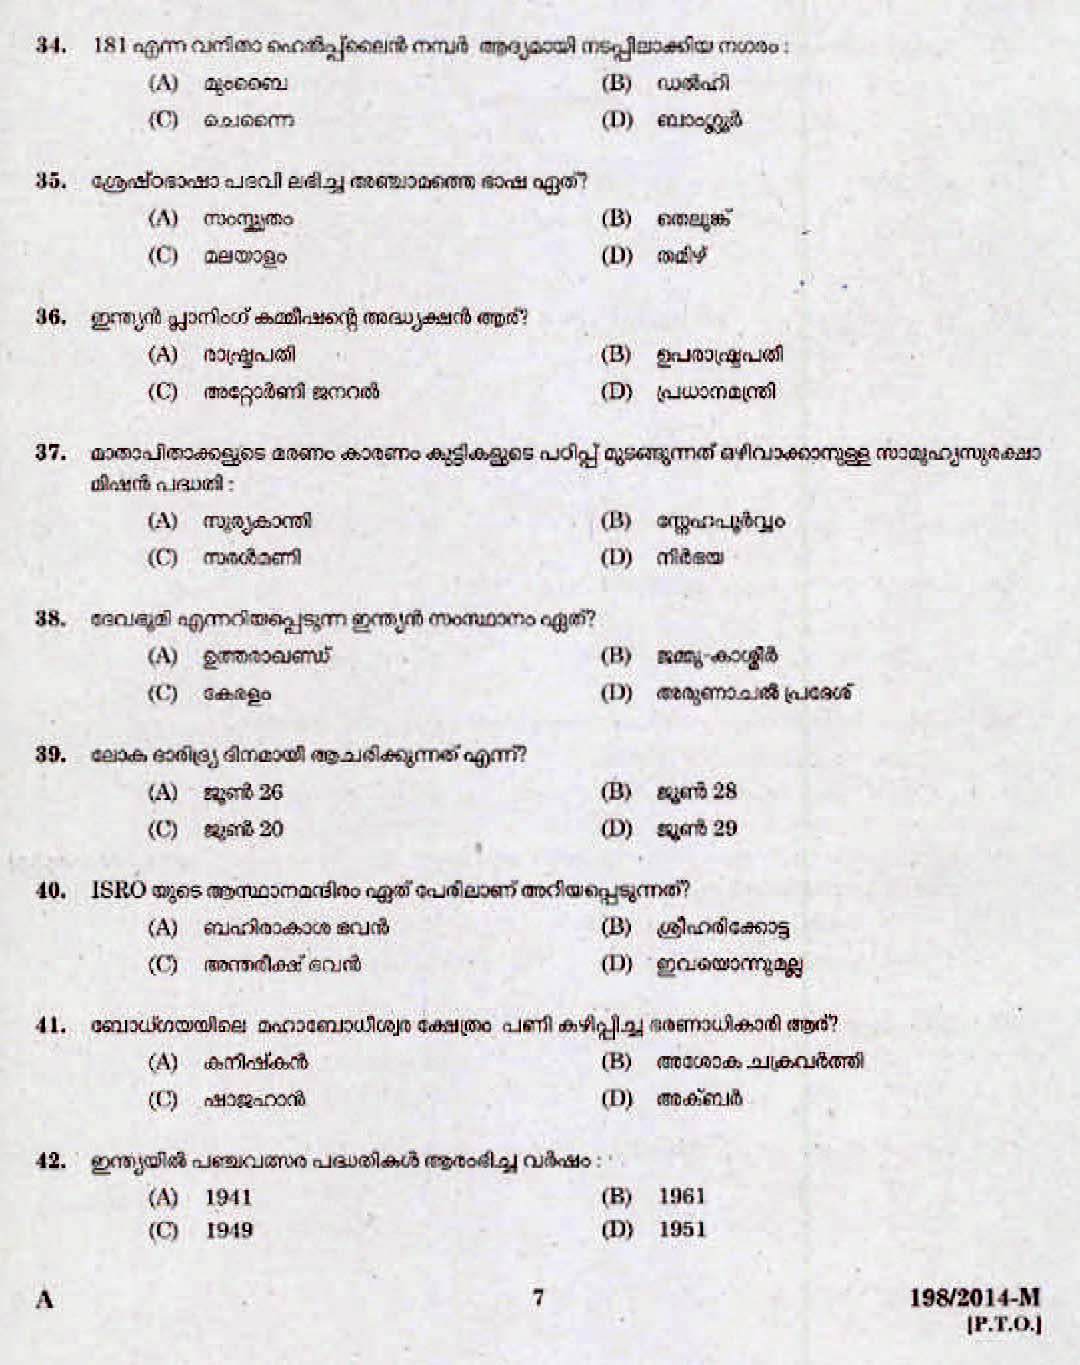 Kerala Last Grade Servants Exam 2014 Question Paper Code 1982014 M 5